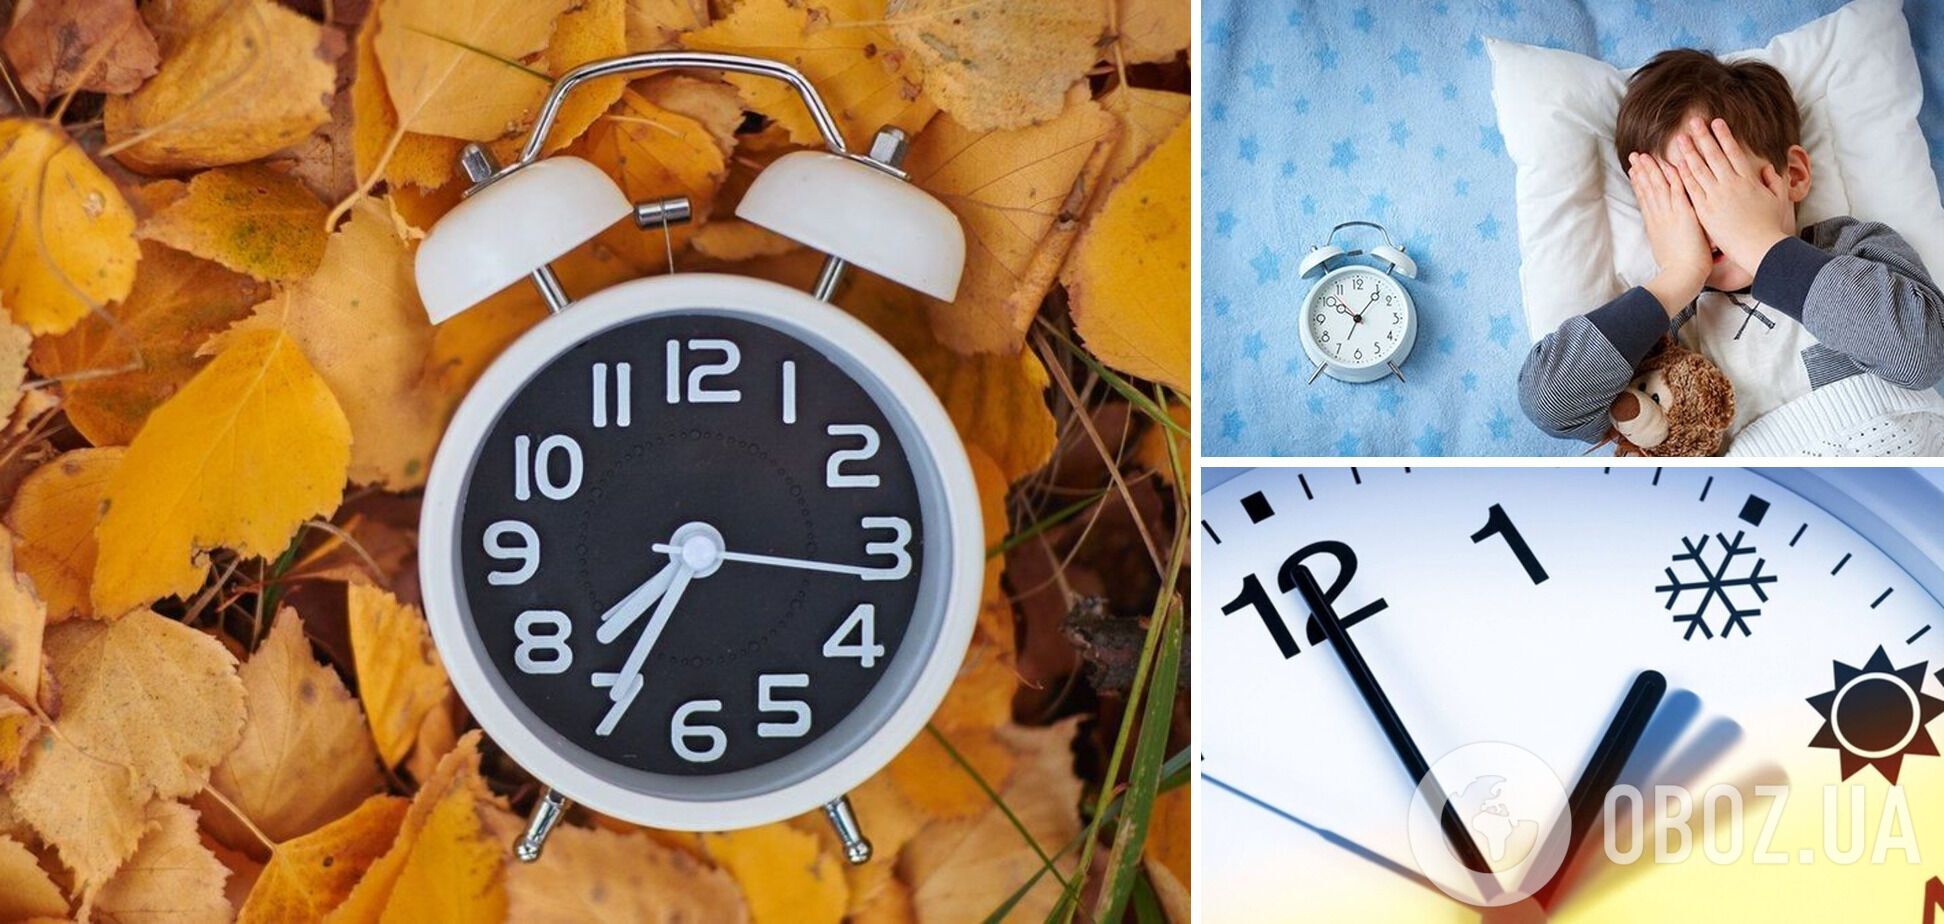 Коли в Україні переводять годинники на зимовий час: дата 